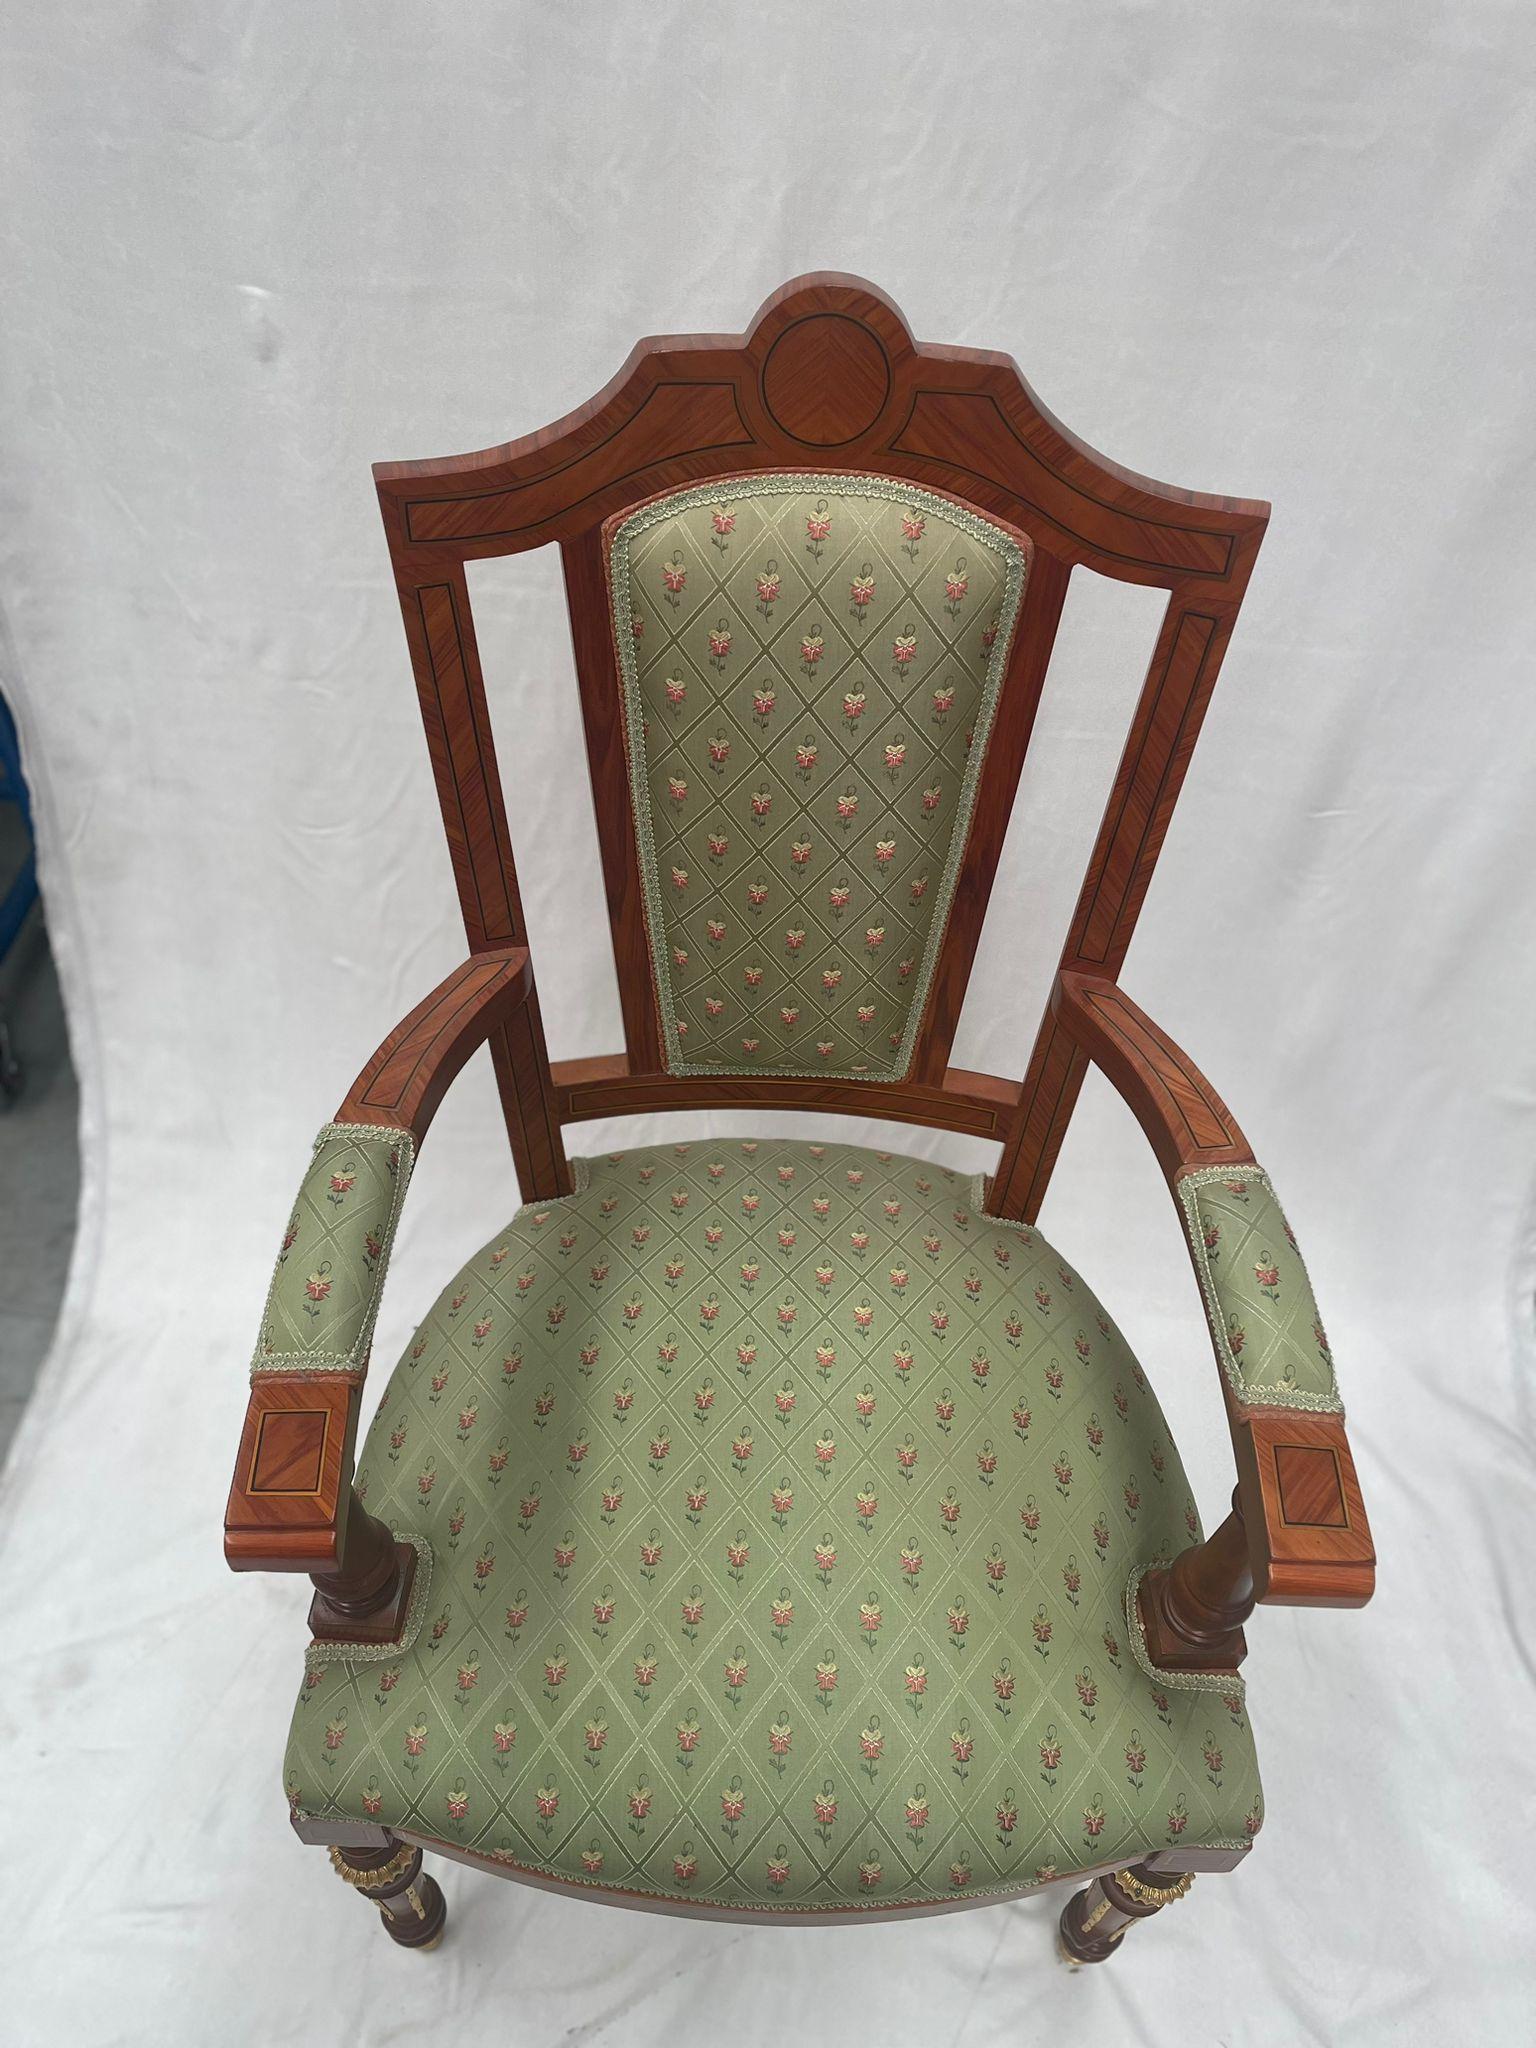 Stilvoller Sessel aus Nussbaumholz, mit exquisiten Goldverzierungen an den Beinen des Sessels. Die Sitzfläche des Sessels ist mit einem zarten Stoff gepolstert und mit einem Pad versehen, das den Sessel bequem macht. geschaffen für den König von